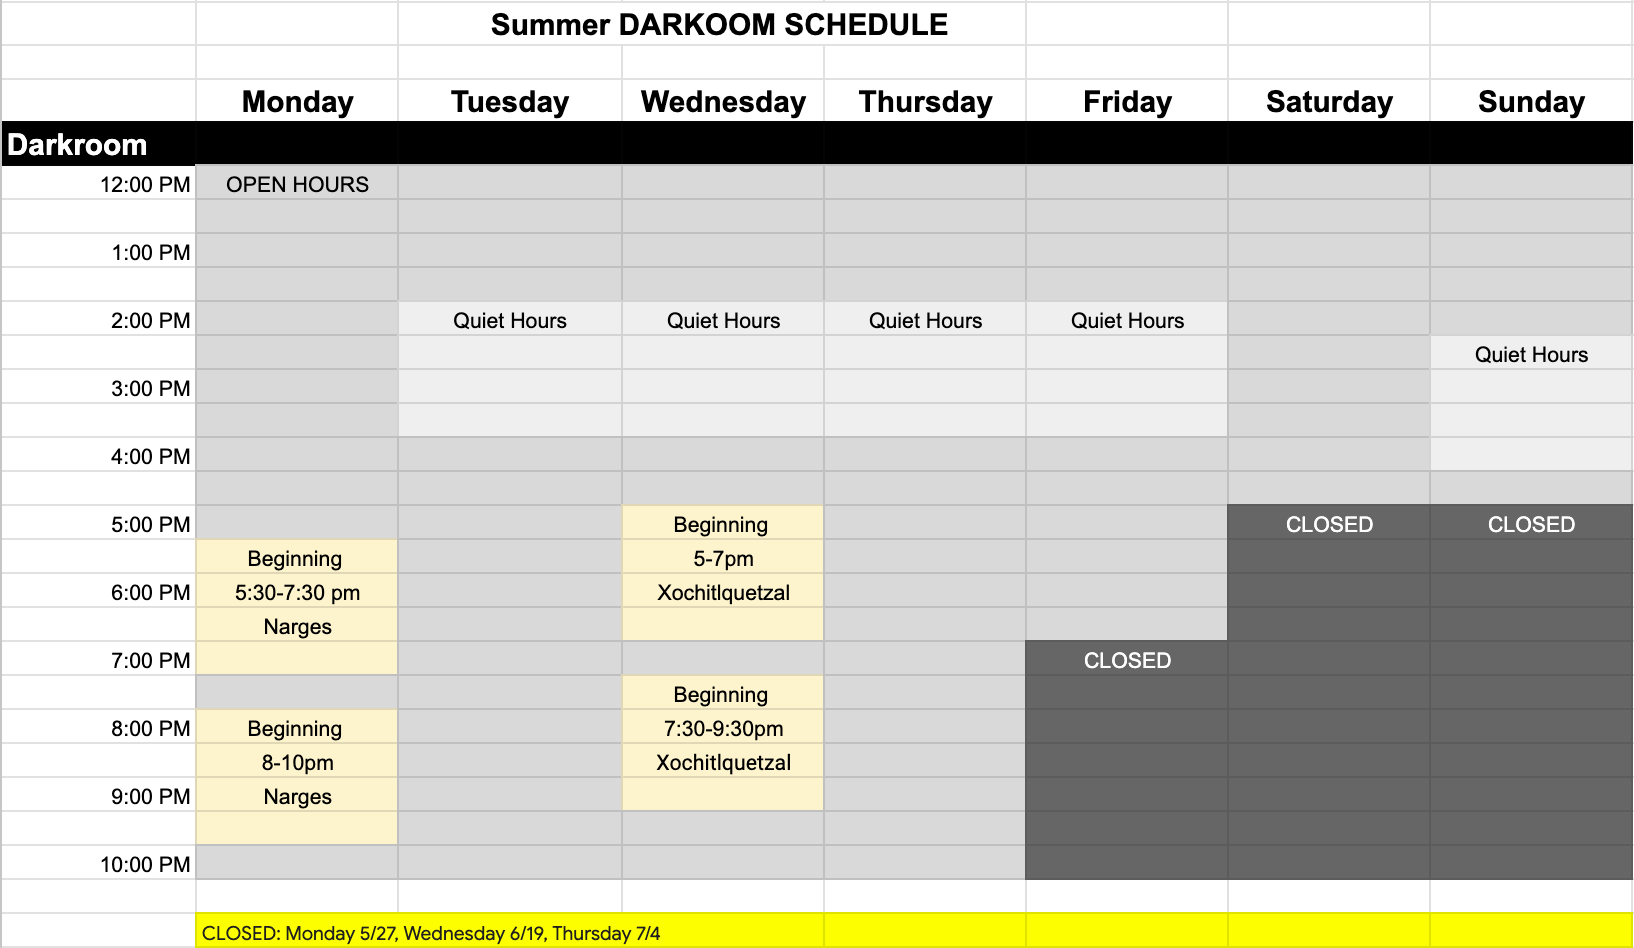 Darkroom Summer Schedule